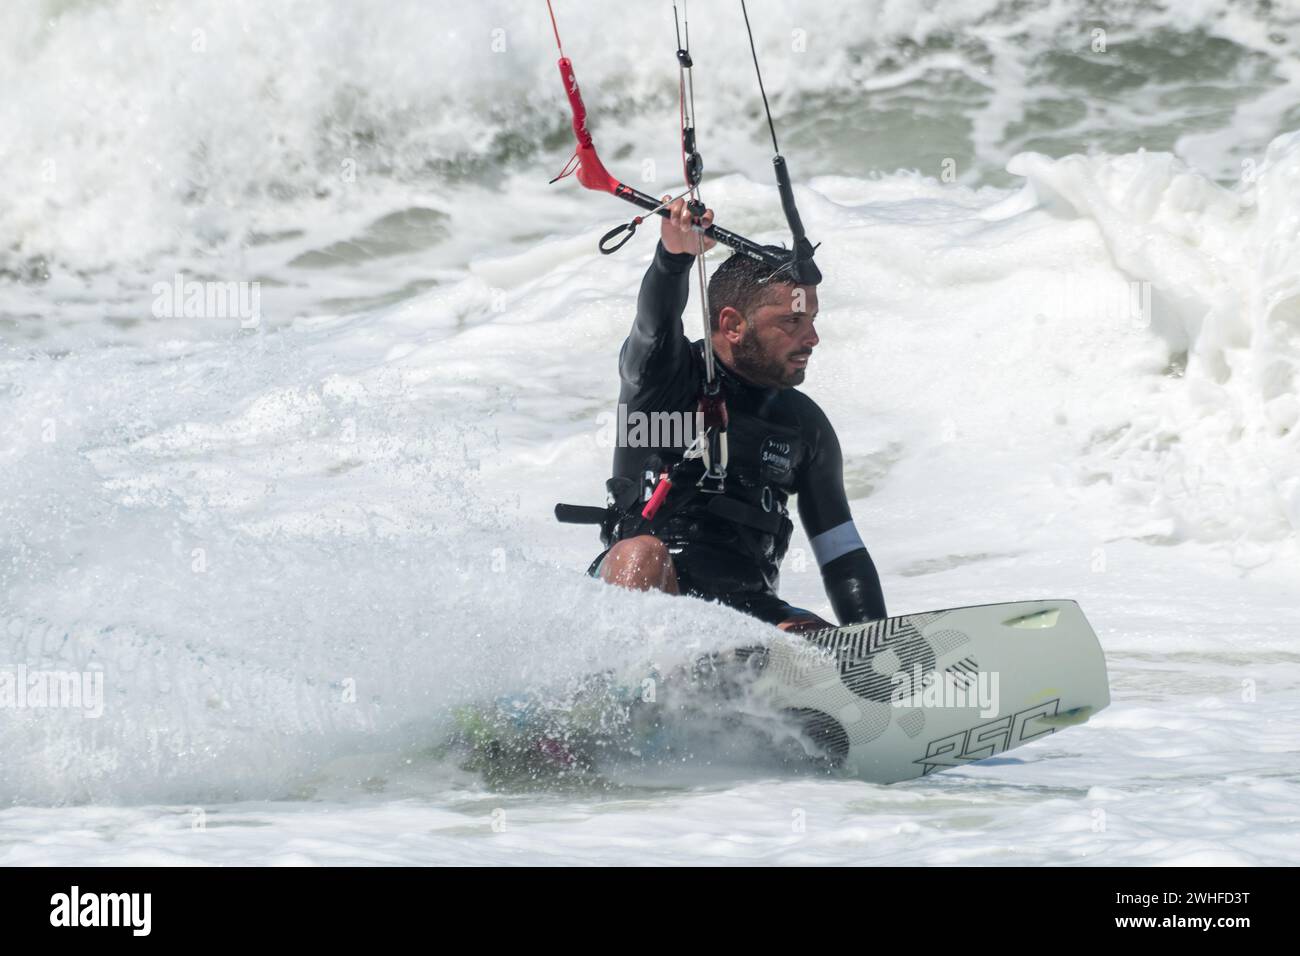 Kite surfer par une journée ensoleillée Banque D'Images